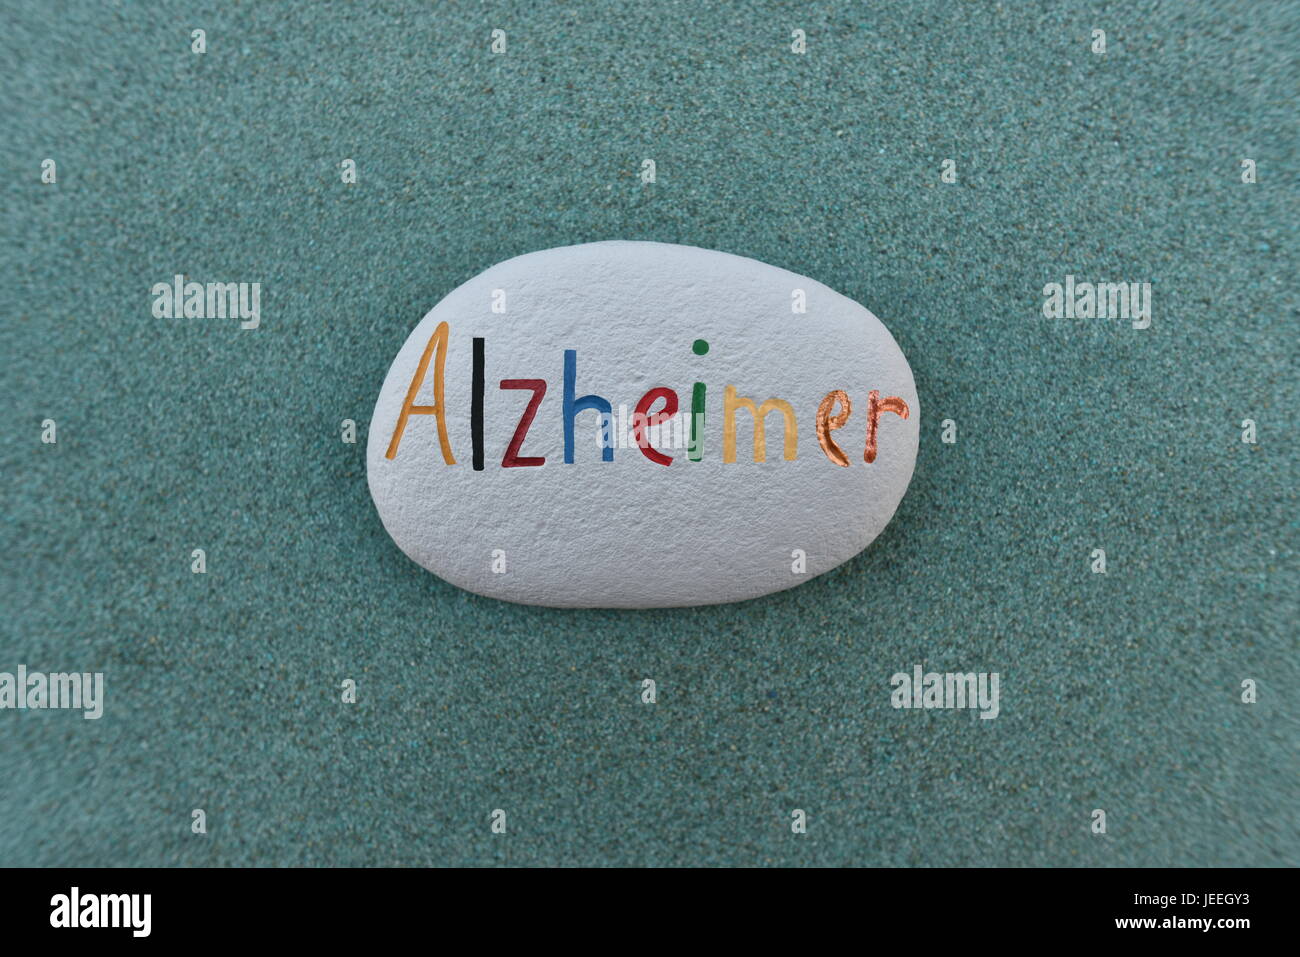 La maladie d'Alzheimer nom peint sur une pierre Banque D'Images